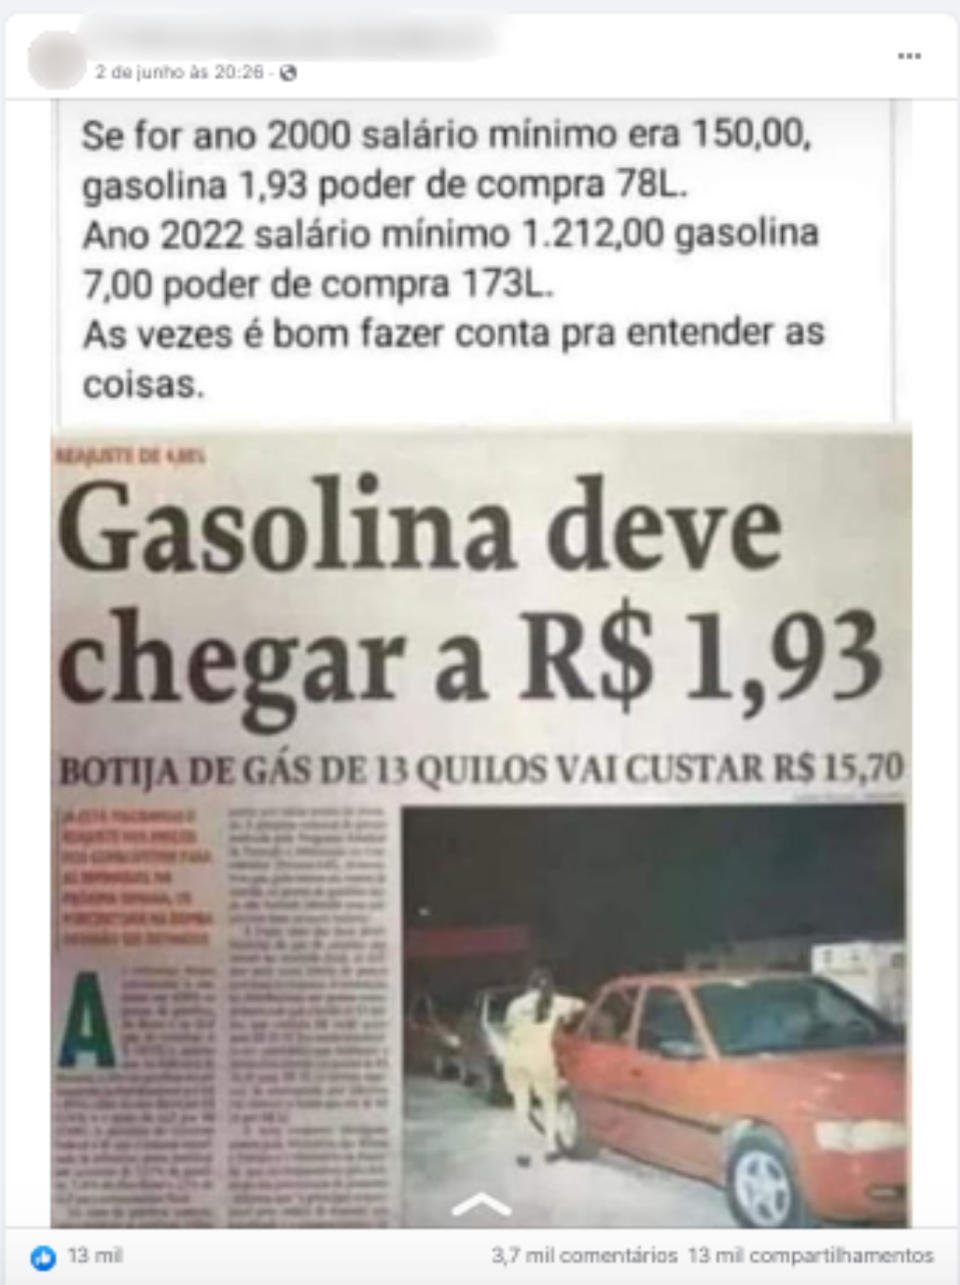 Captura de tela de publicação no Facebook comparando o salário mínimo e valor da gasolina nos anos 2000 e 2022  (Foto: Reprodução / Facebook)